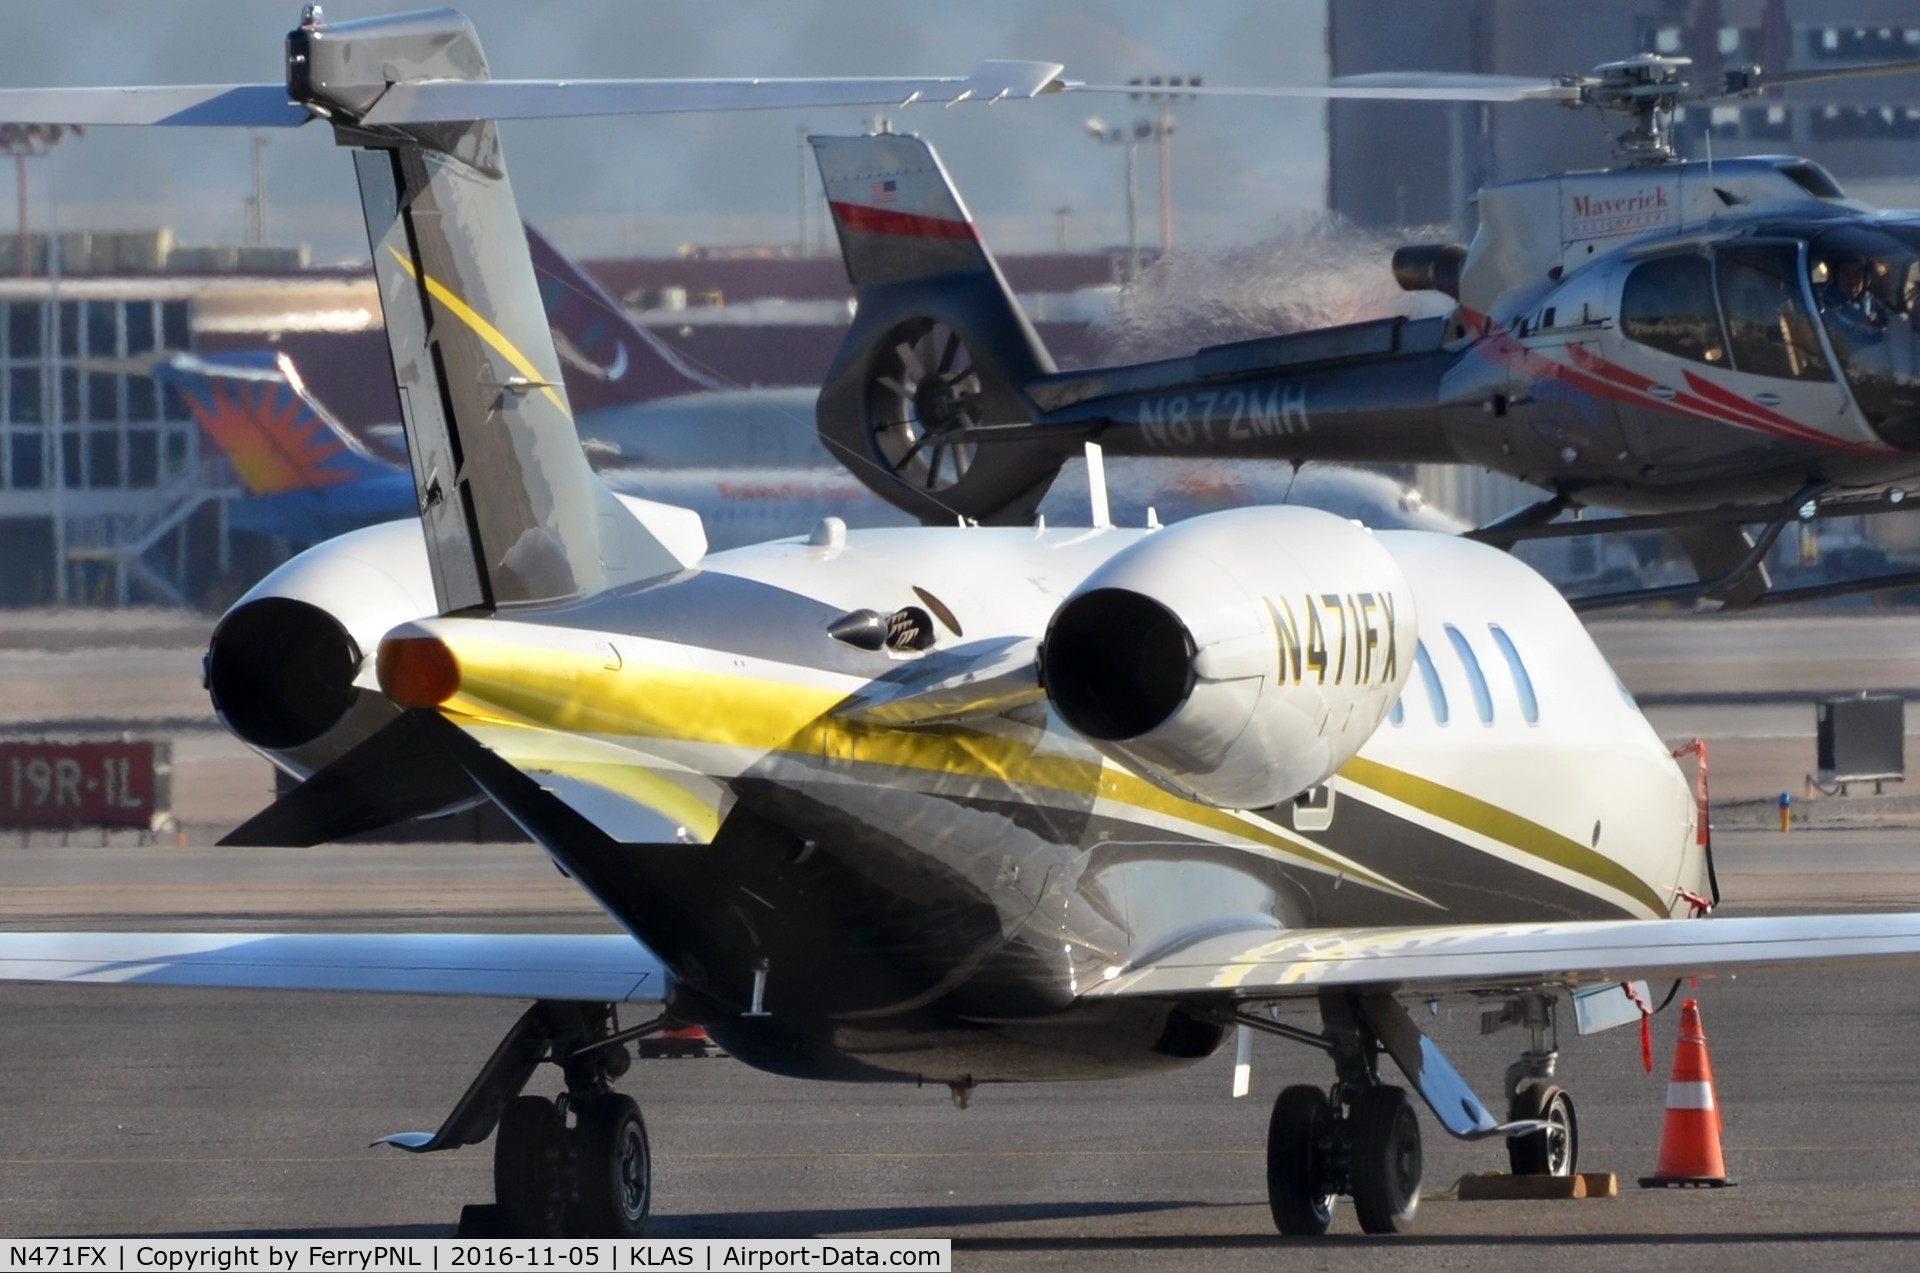 N471FX, 2015 Learjet 75 C/N 45-500, Flexjet Learjet 75